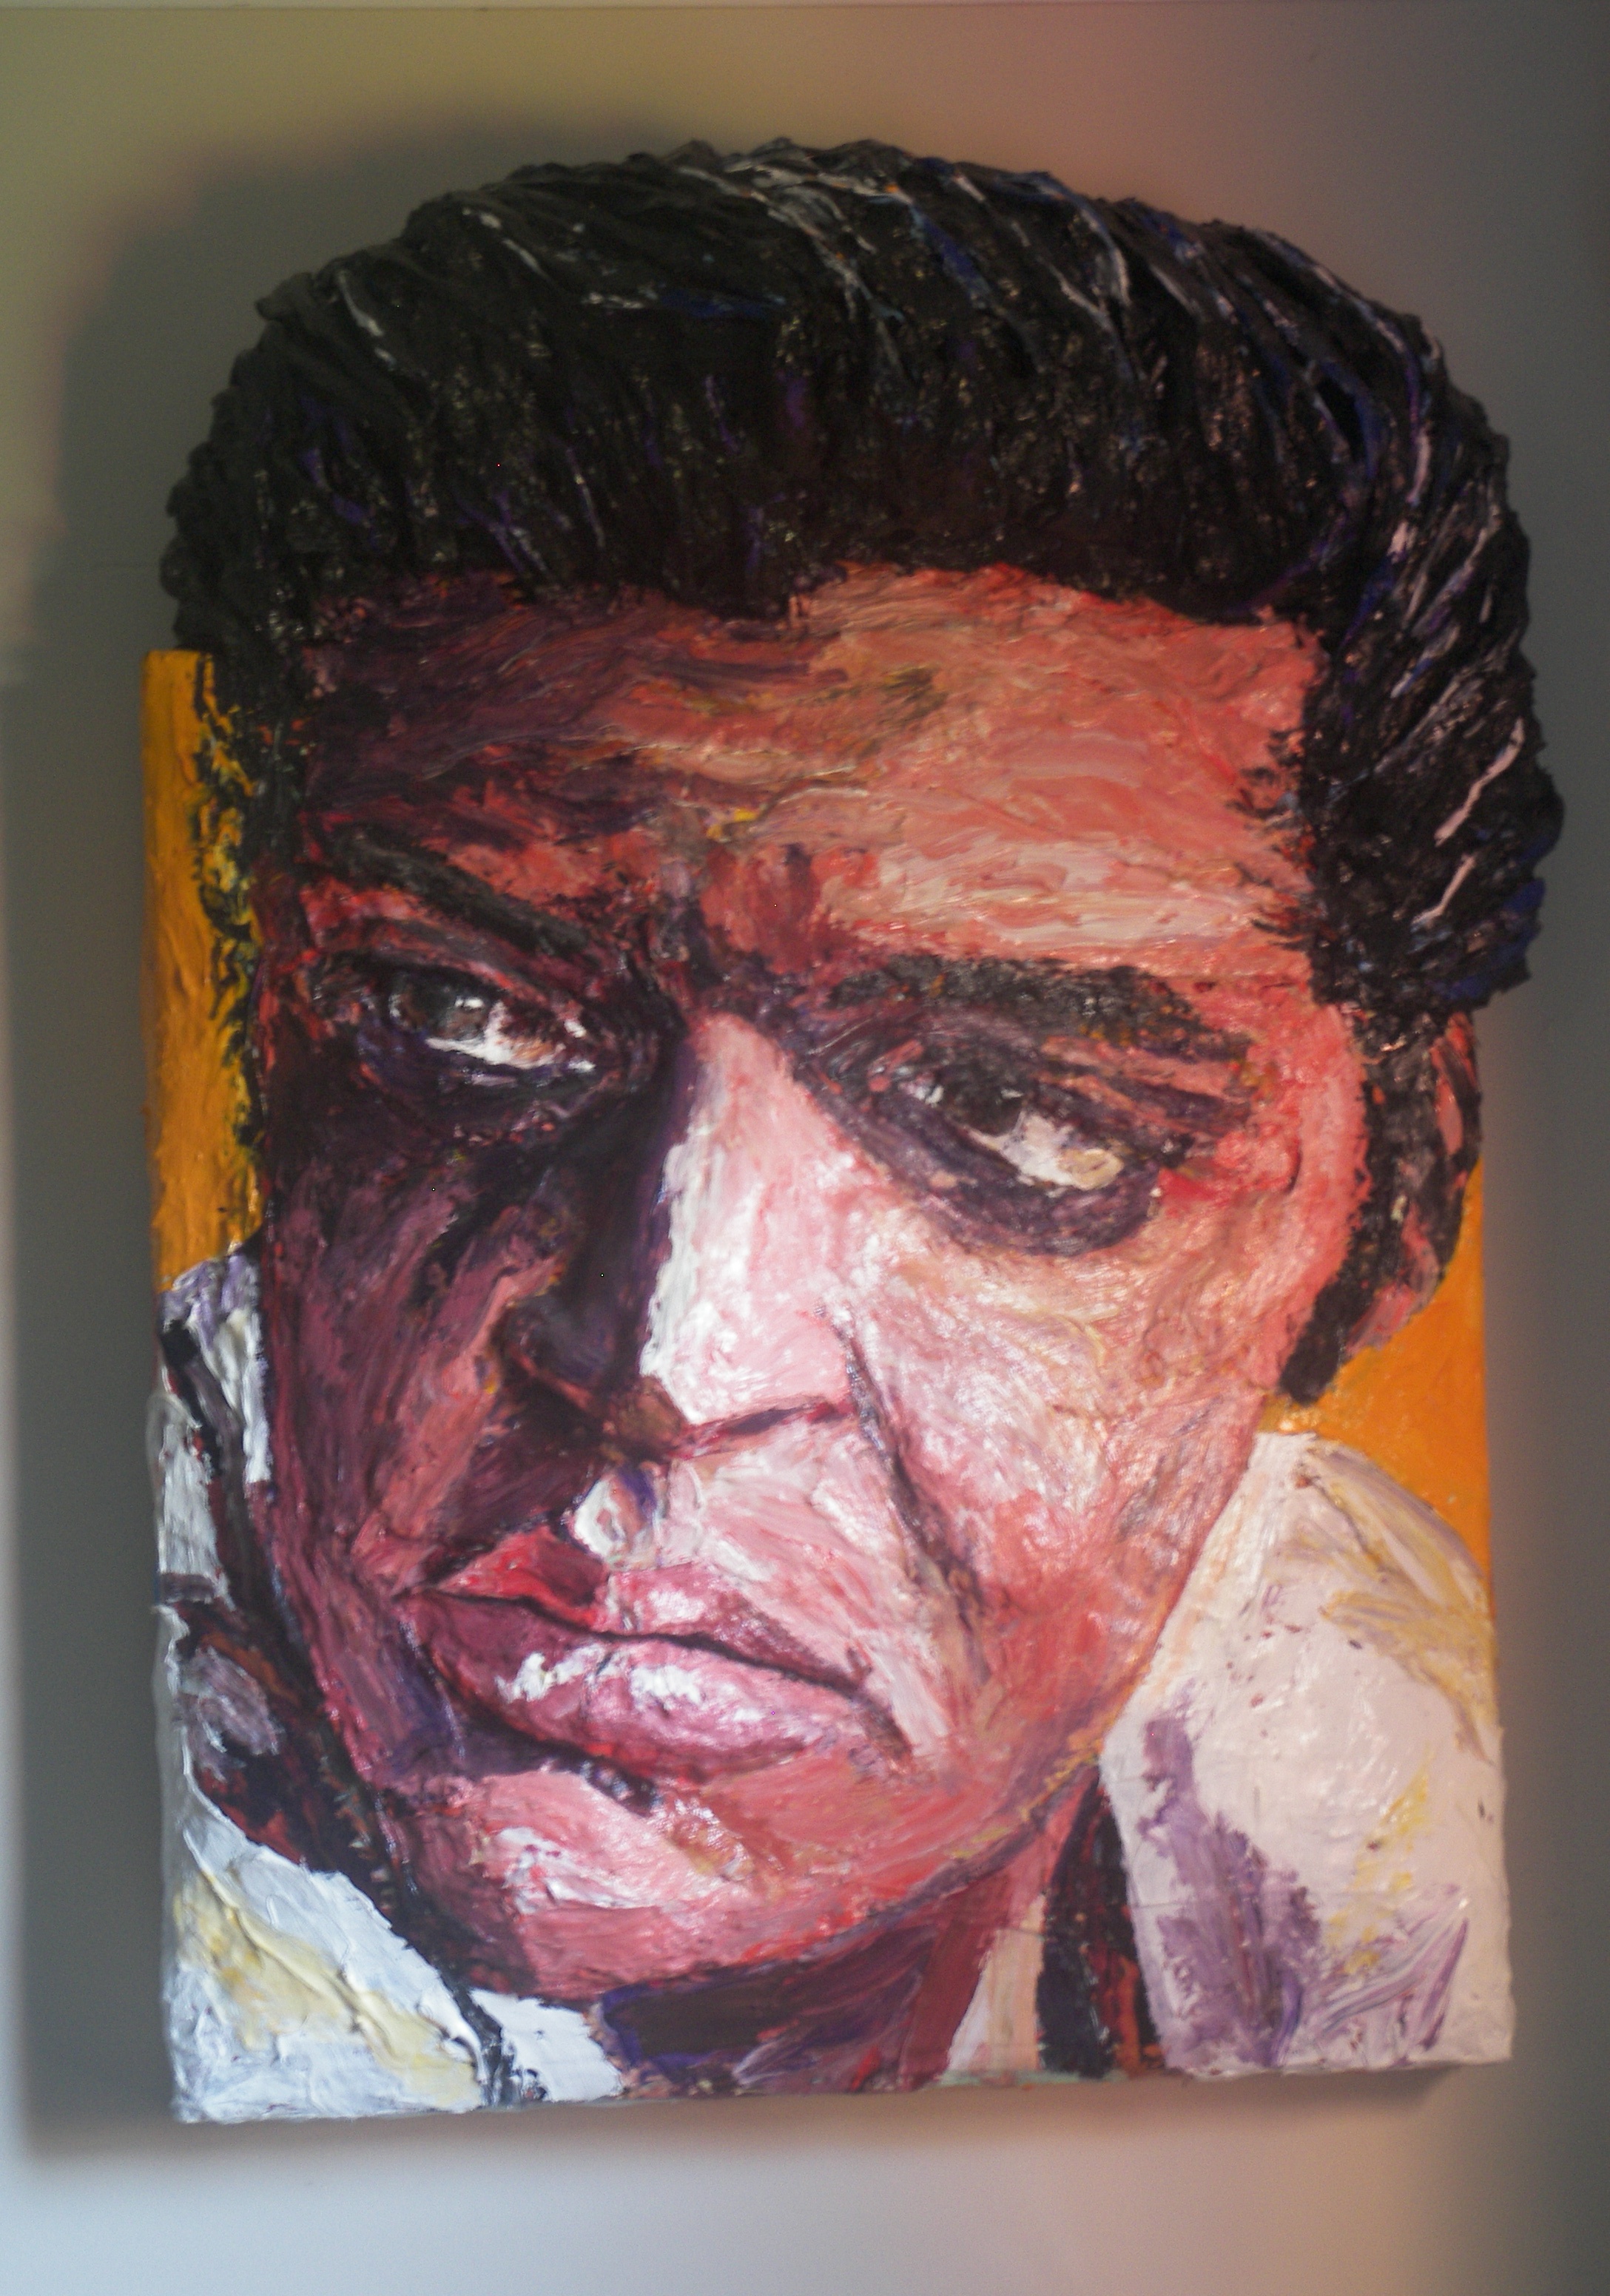 Built-Out Portrait of Elvis Presley by Artist Brett Stuart Wilson